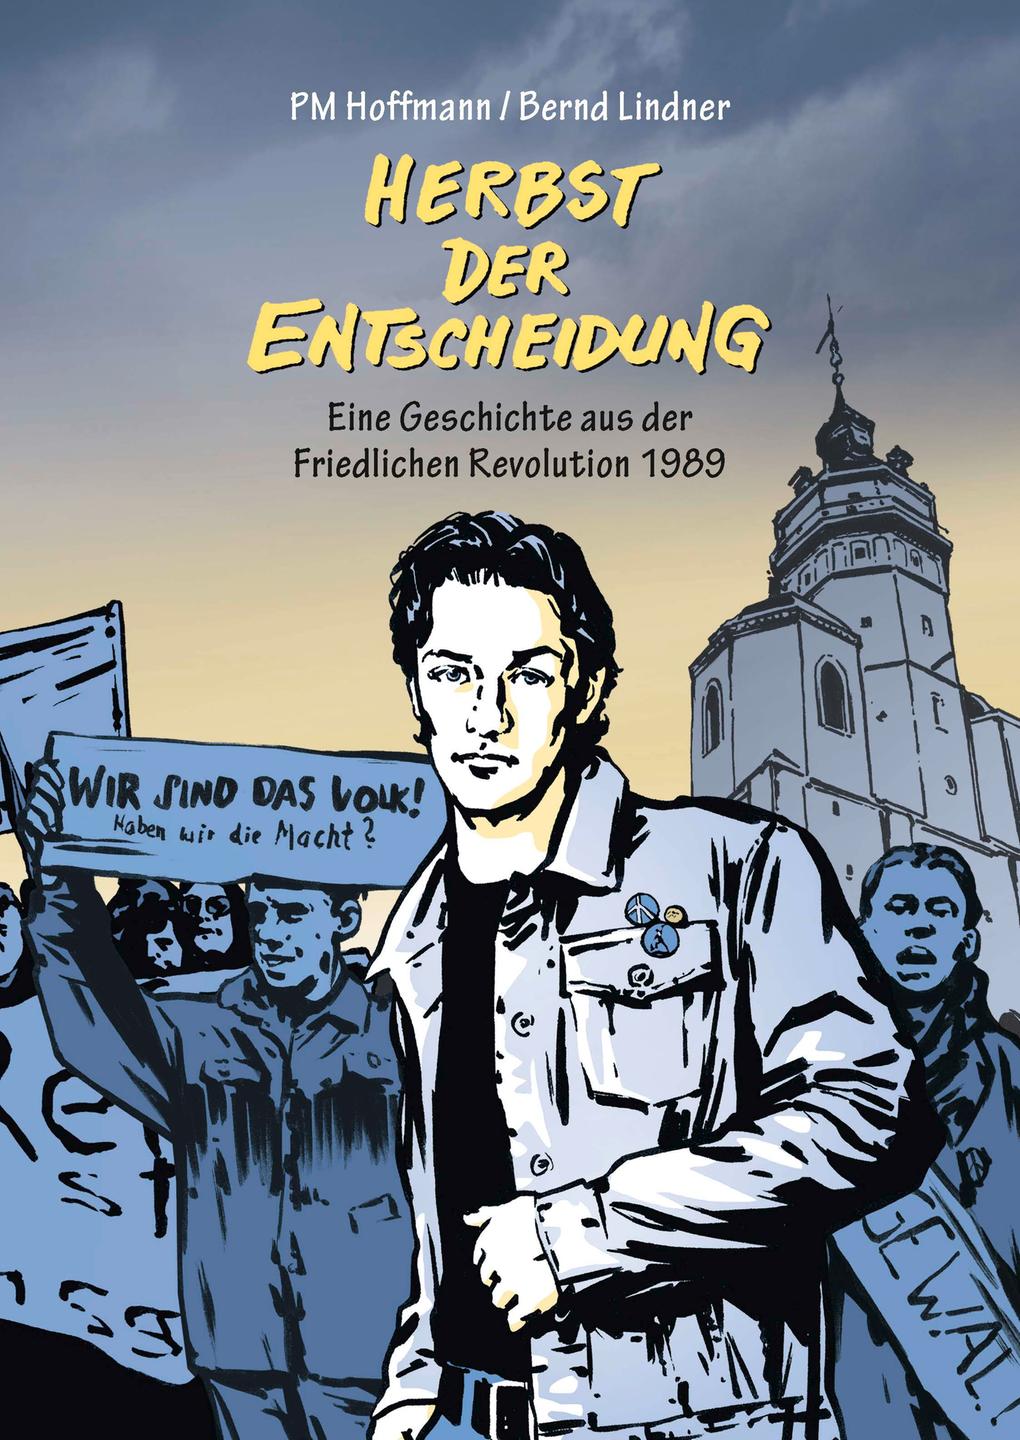 Buchcover: "Herbst der Entscheidung" von PM Hoffmann und Bernd Lindner